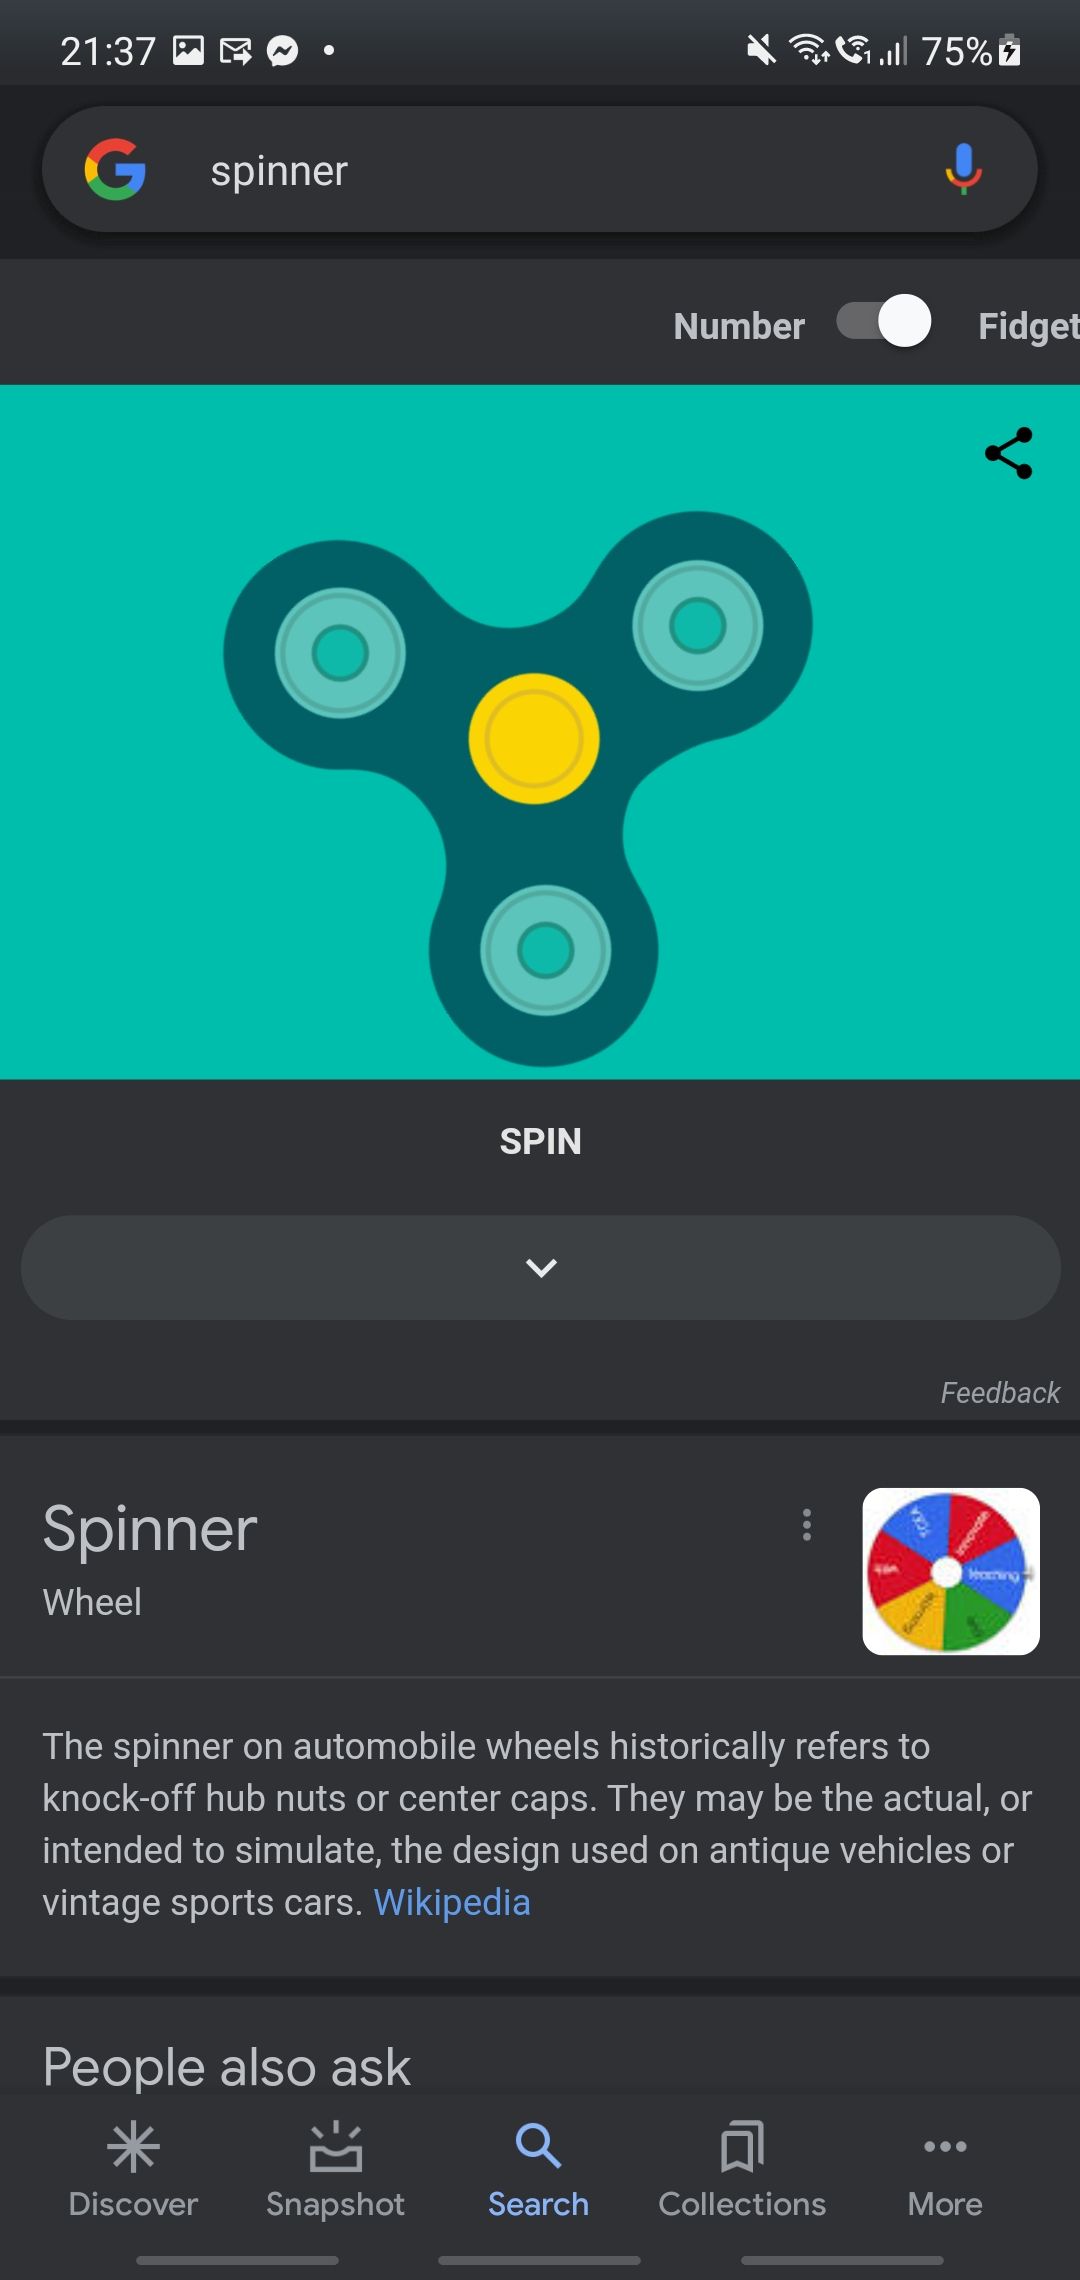 Number spinner - fidget spinner